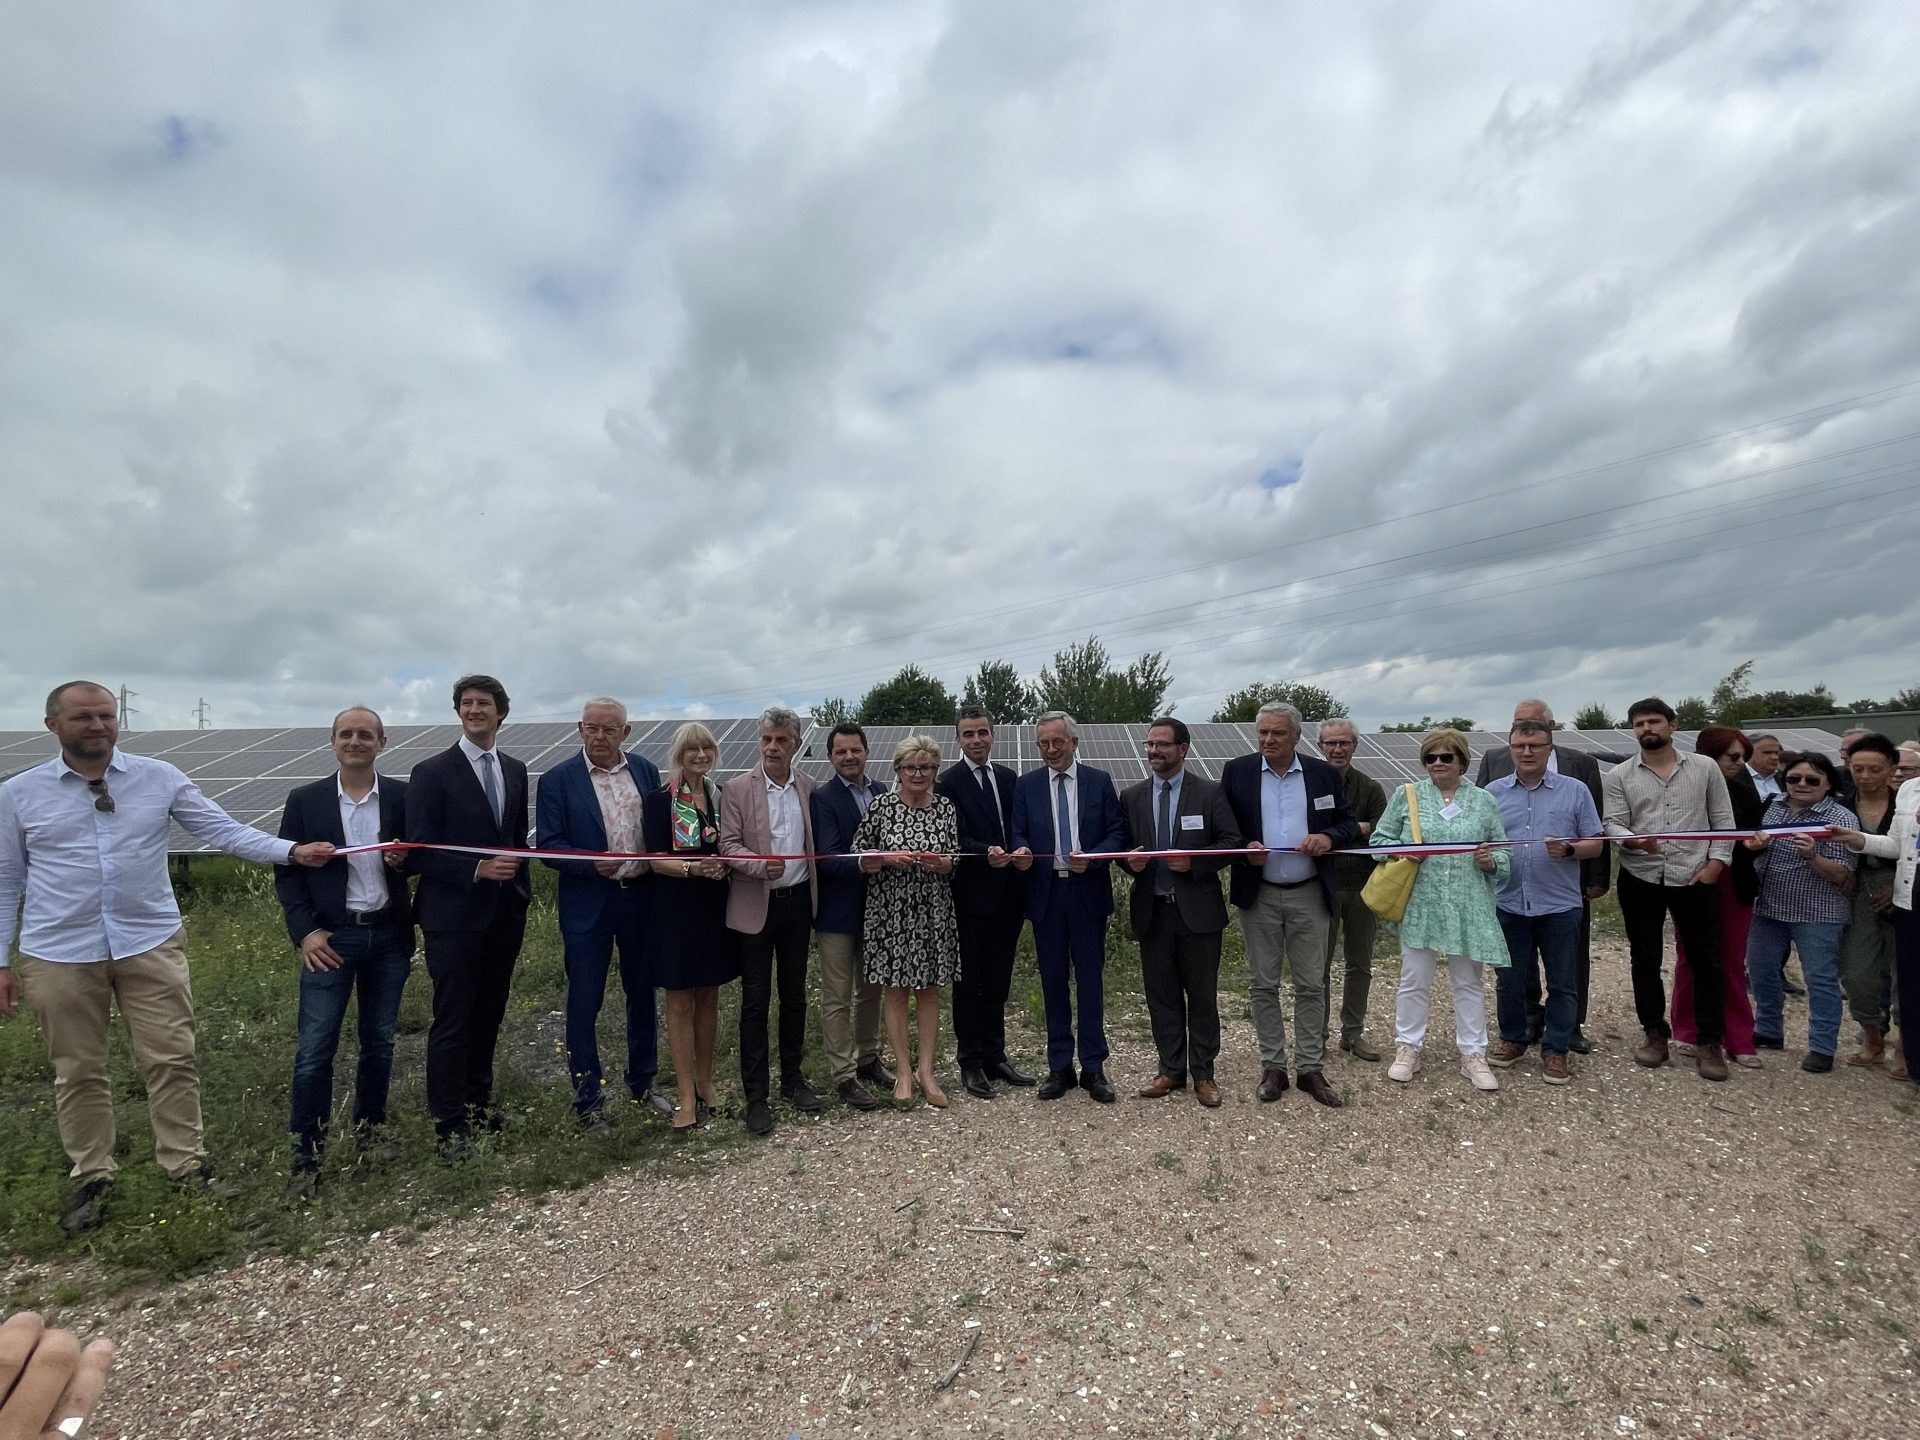 Inauguration du parc solaire photovoltaïque de Lucy à Montceau-les-Mines (71)
